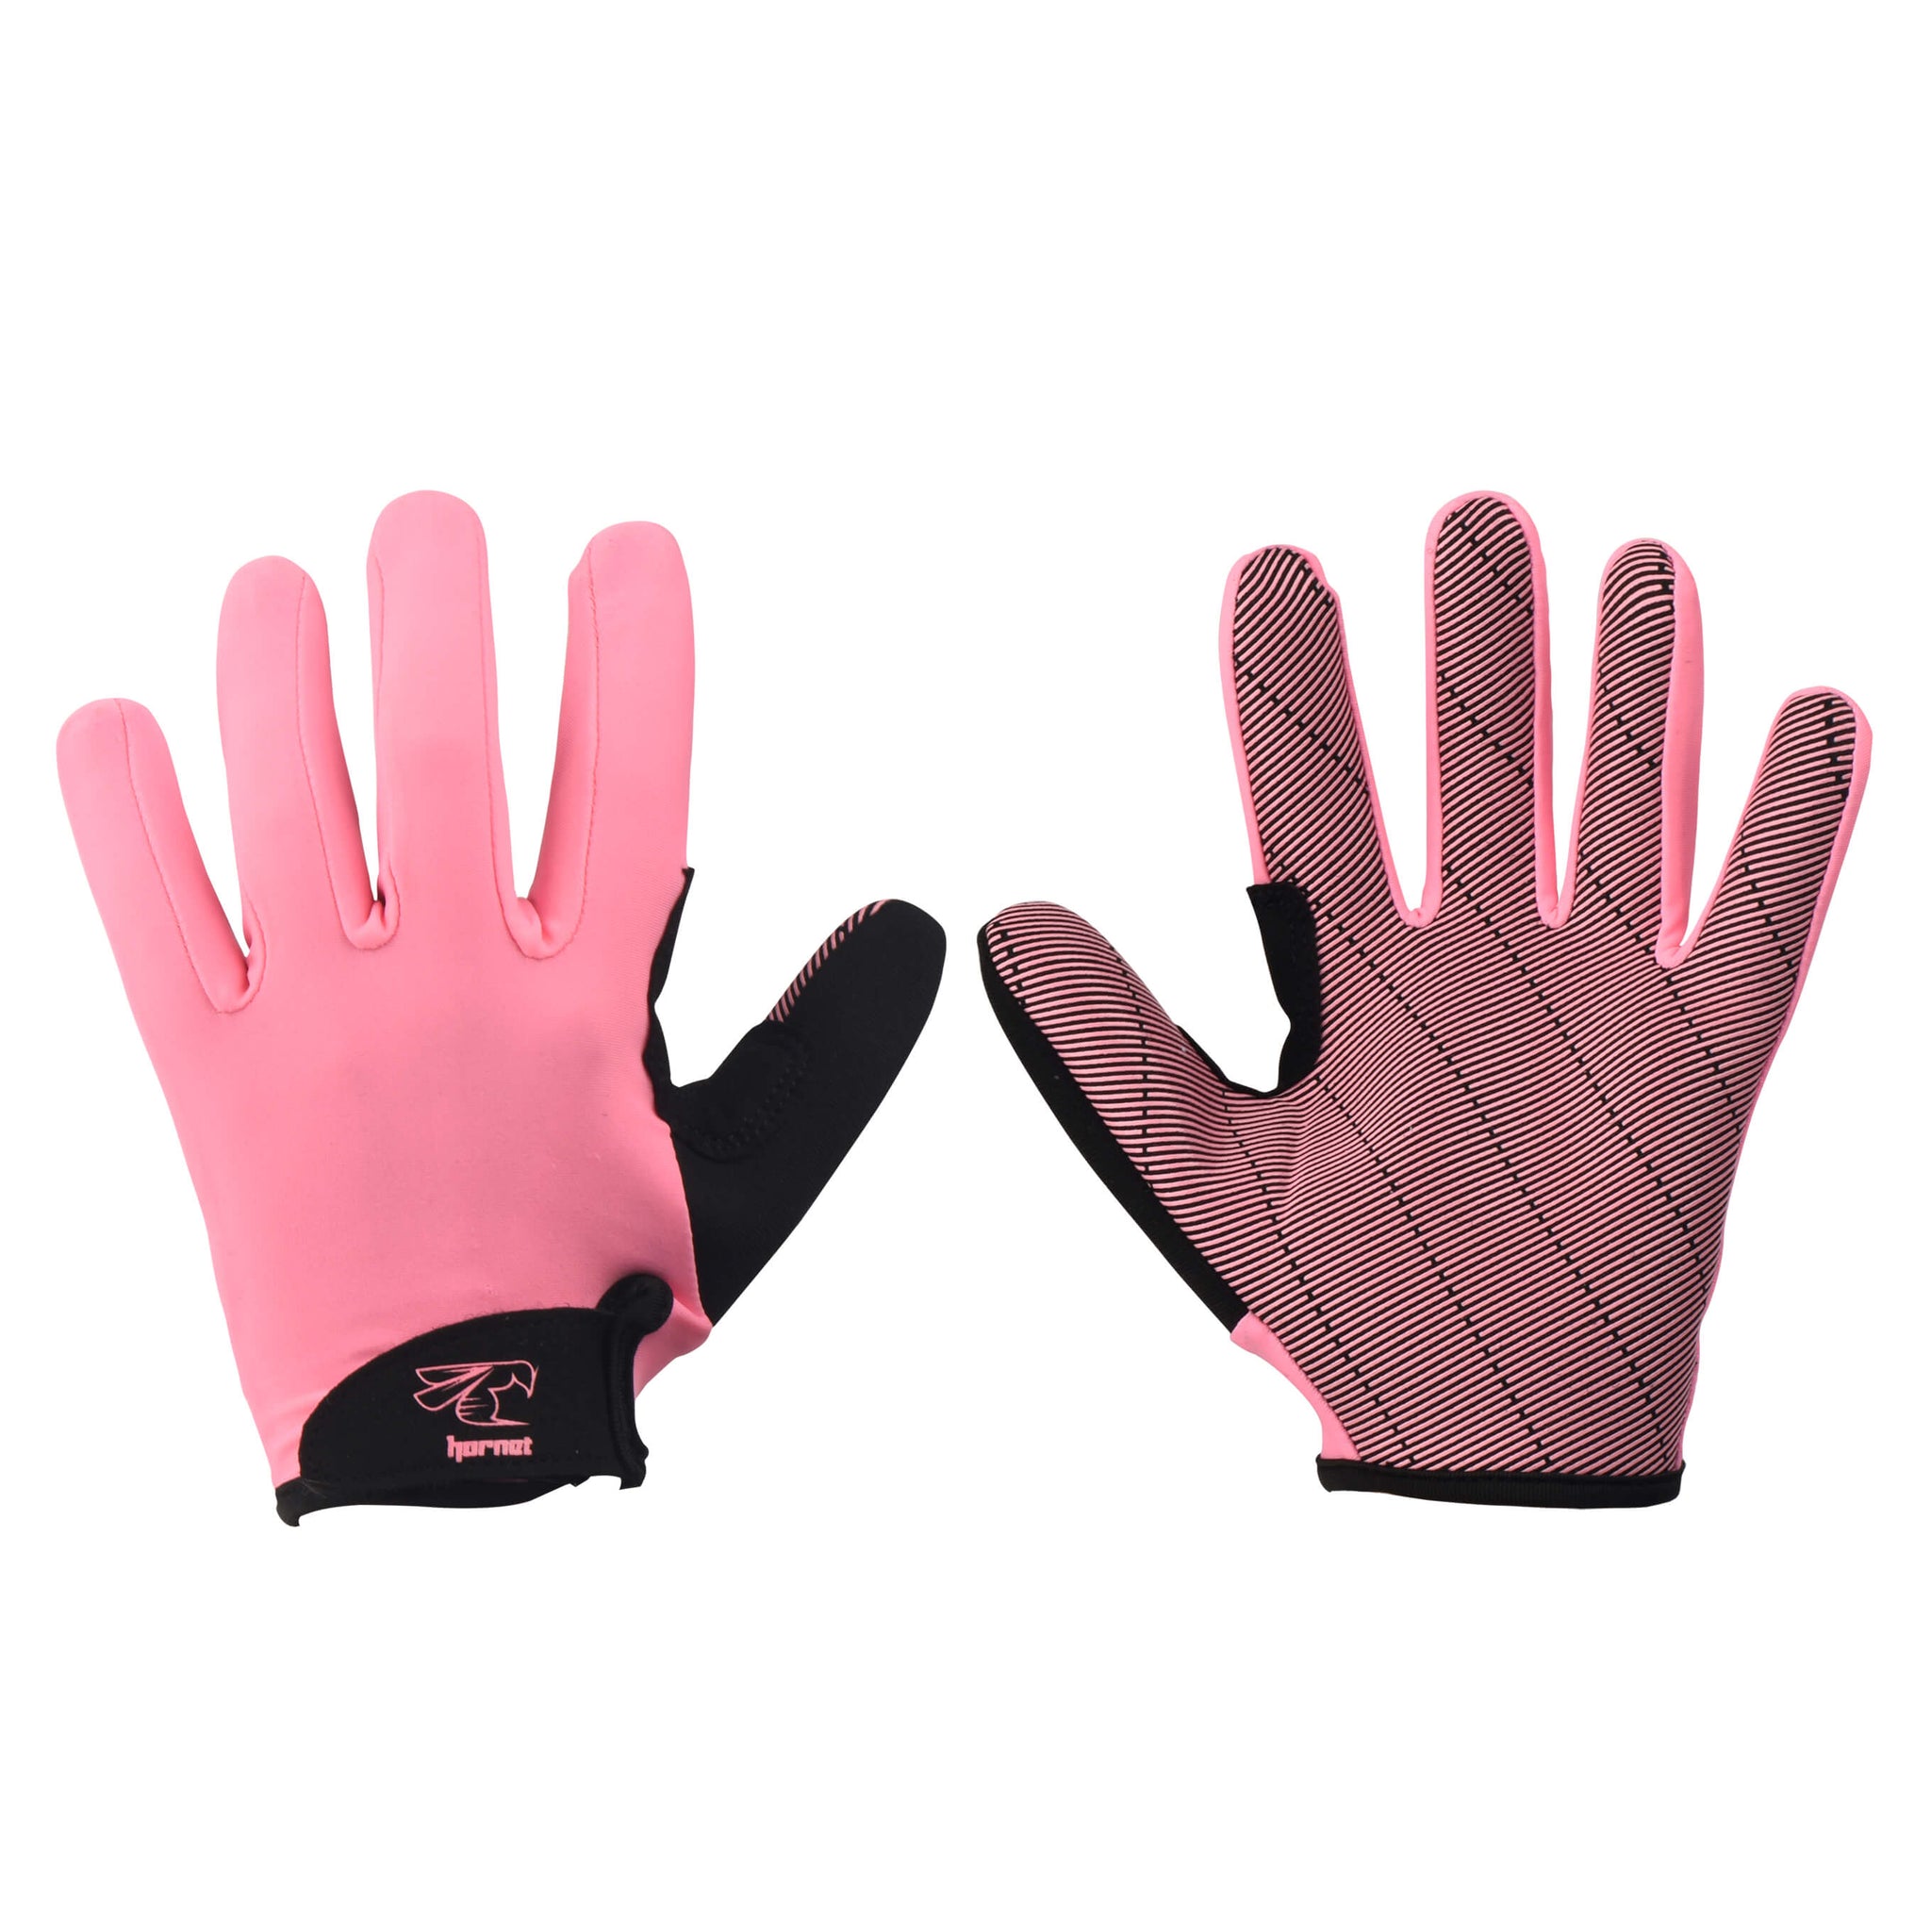  FitsT4 Kayaking Gloves 3/4 Or Full Finger Padded